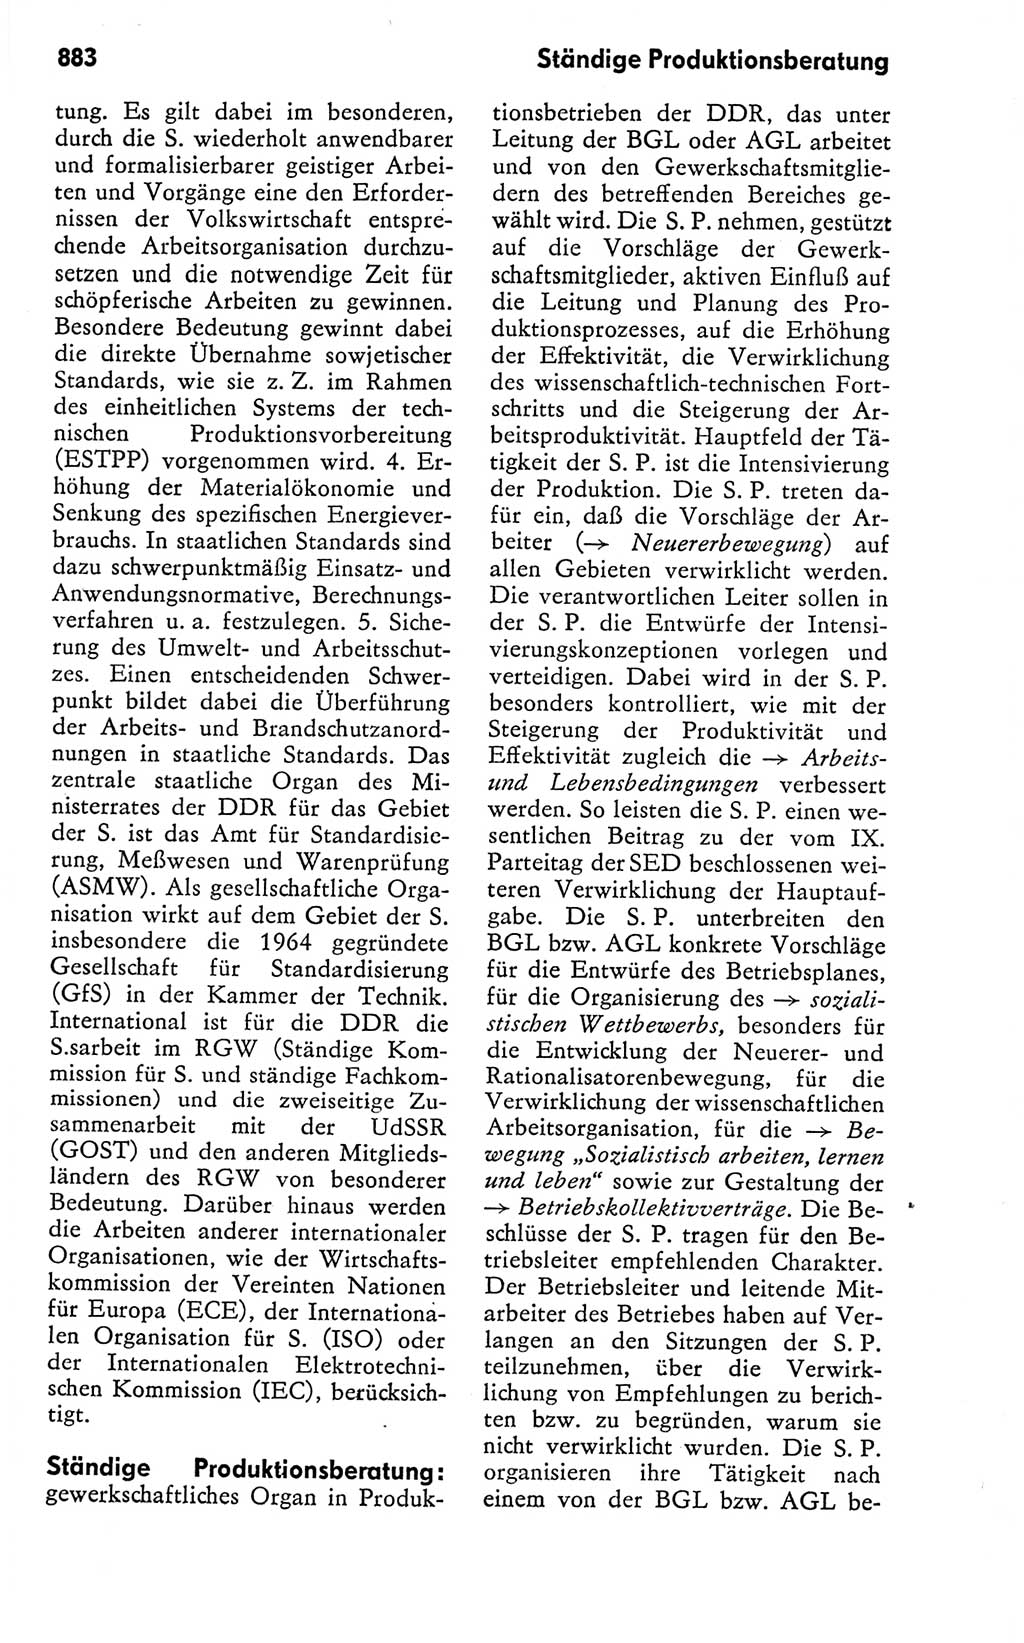 Kleines politisches Wörterbuch [Deutsche Demokratische Republik (DDR)] 1978, Seite 883 (Kl. pol. Wb. DDR 1978, S. 883)